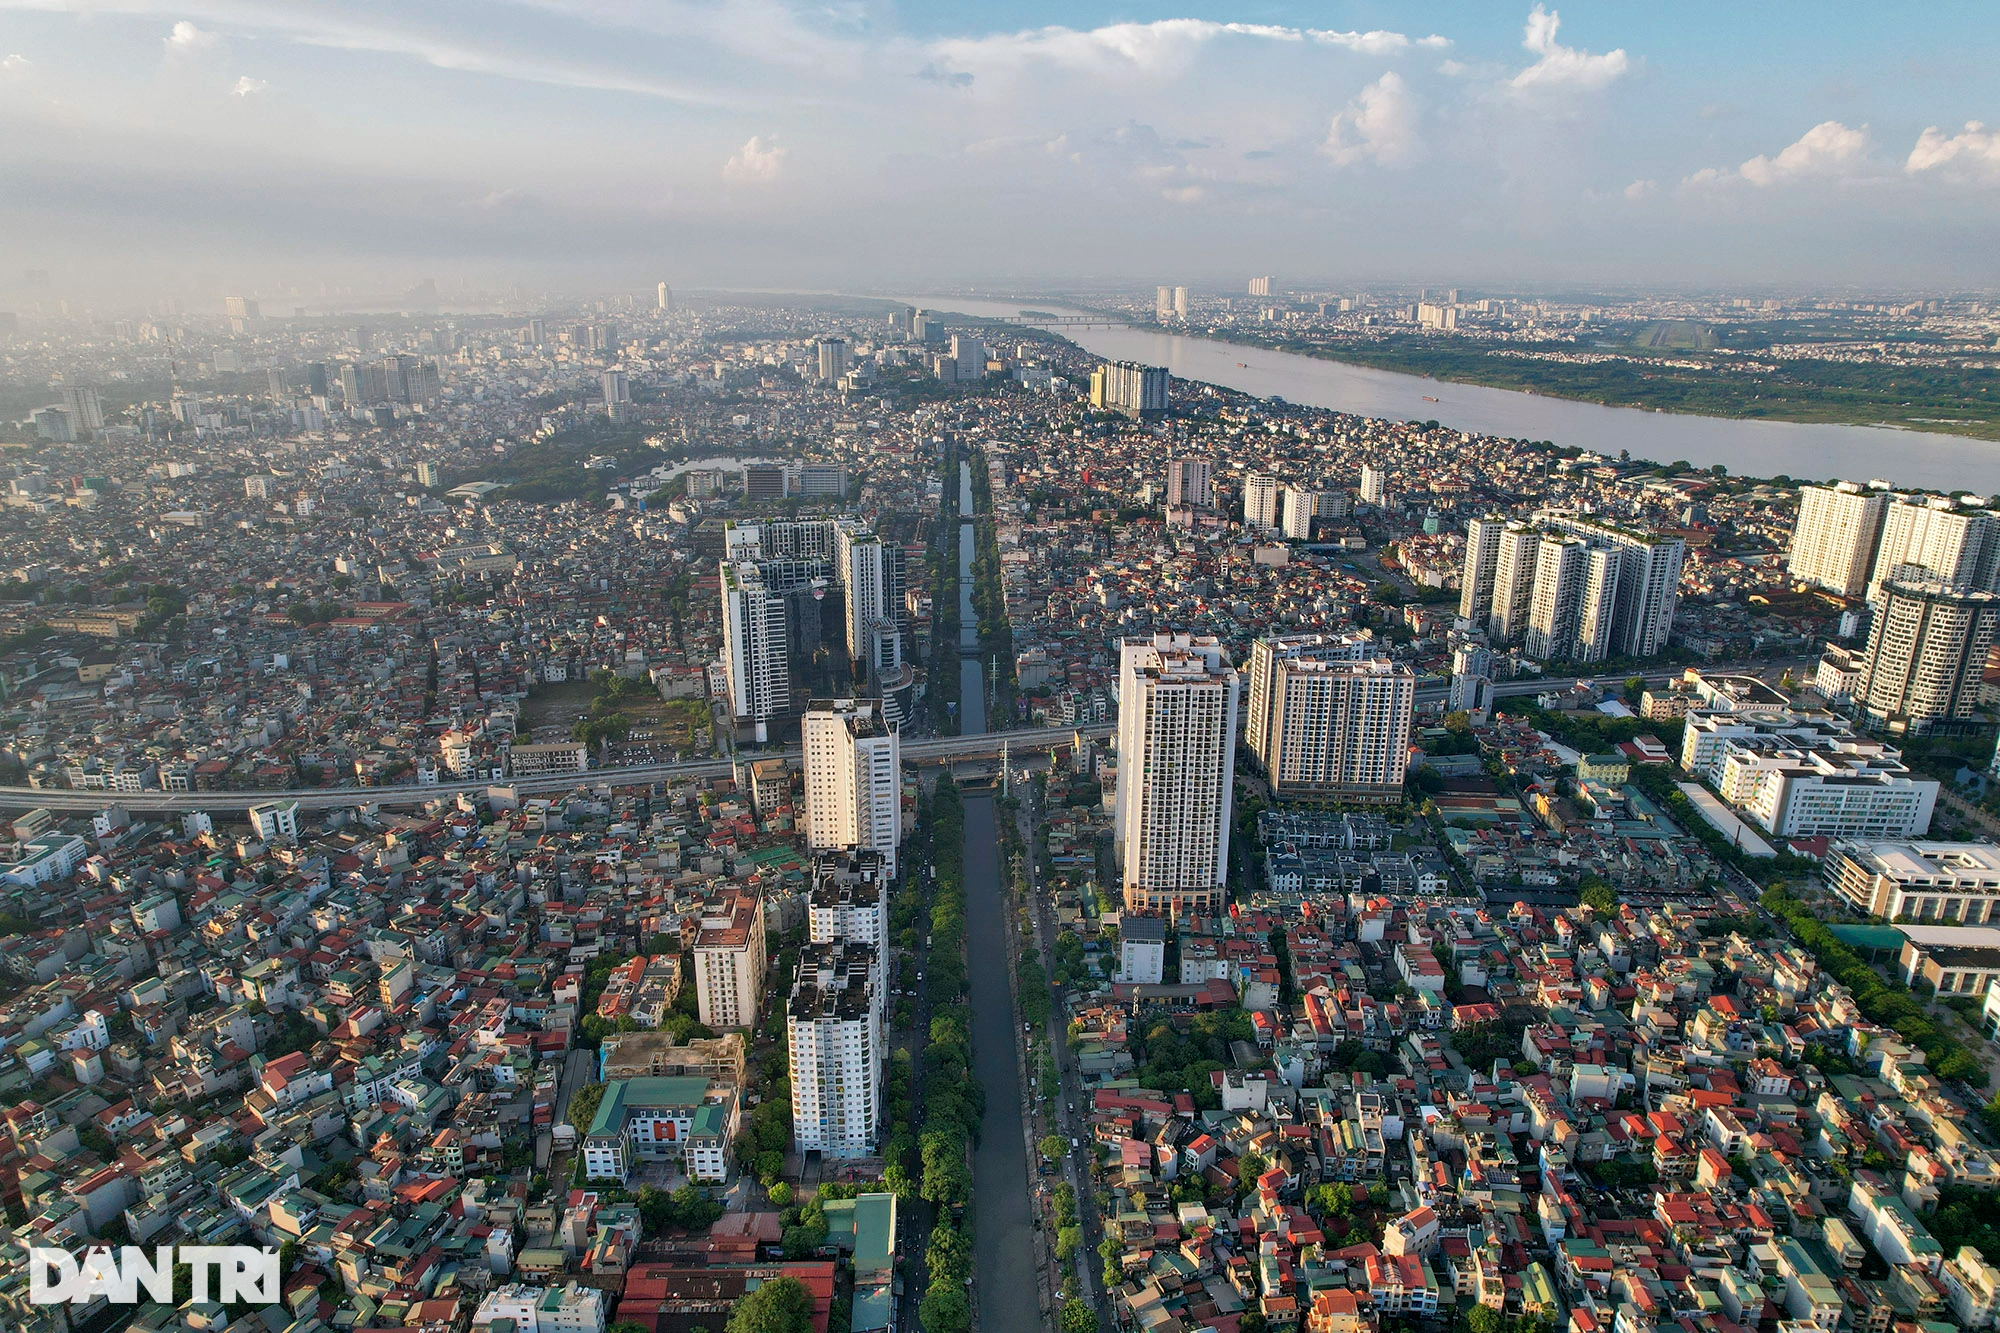 Nhà cửa dày đặc không còn khoảng trống khi nhìn đô thị Hà Nội từ trên cao - 5